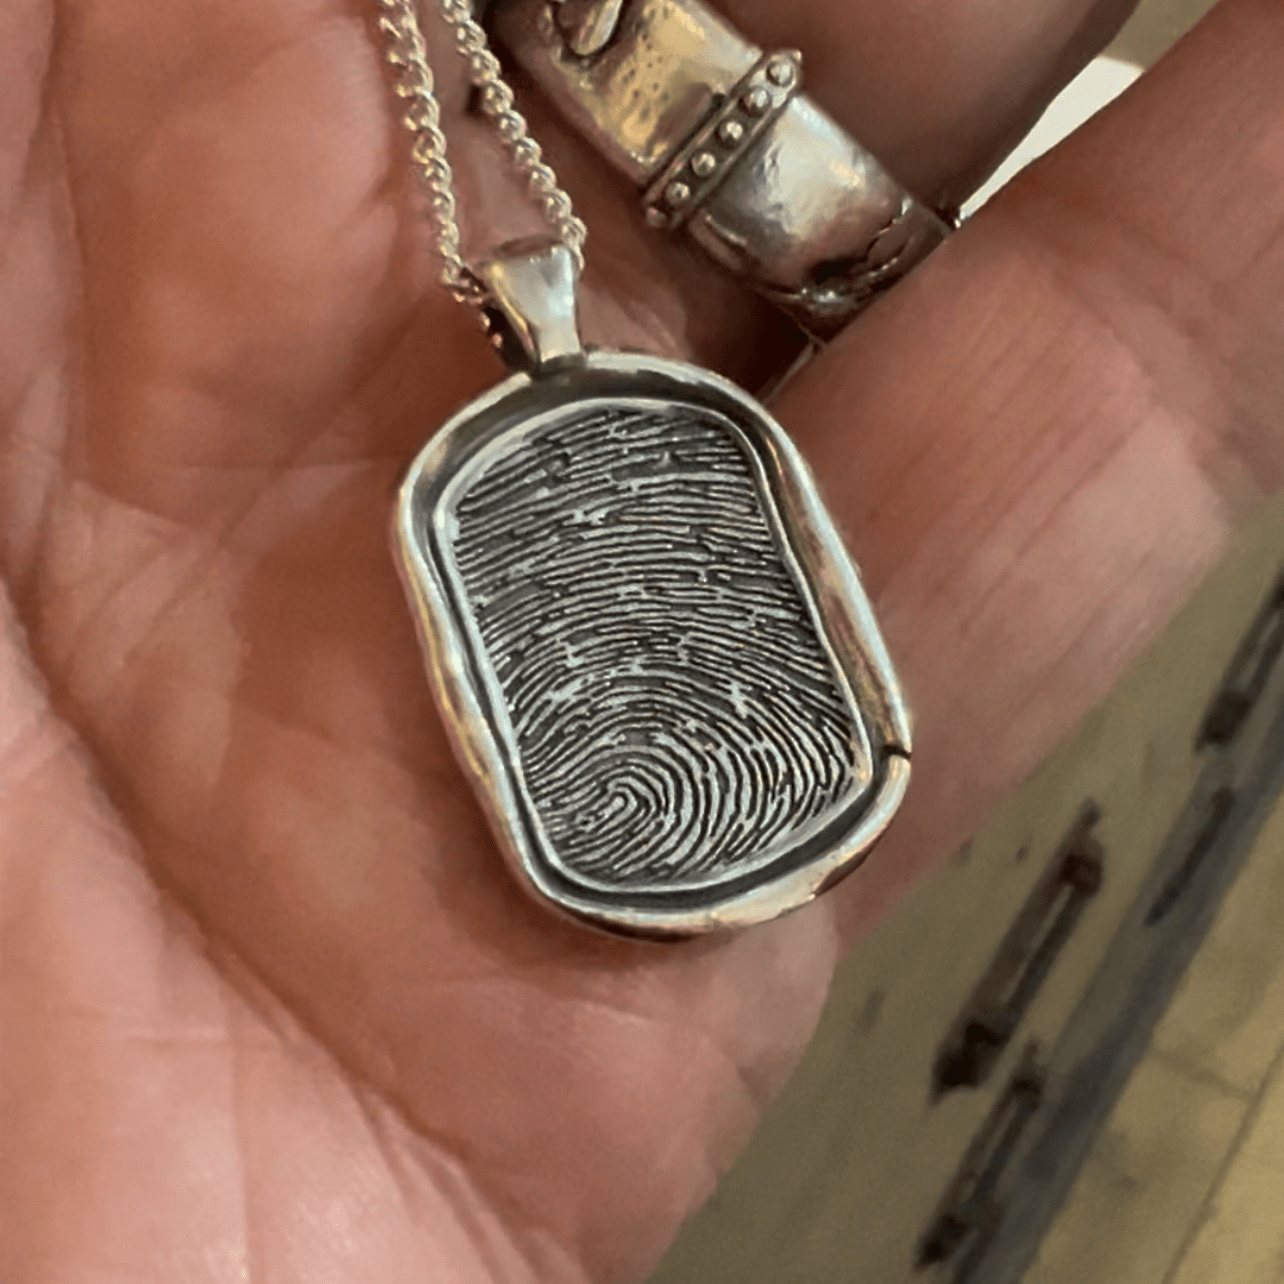 Fingerprint Necklace | Rustic Dog Tag Pendant Pendant by Chris Parry Jewellery